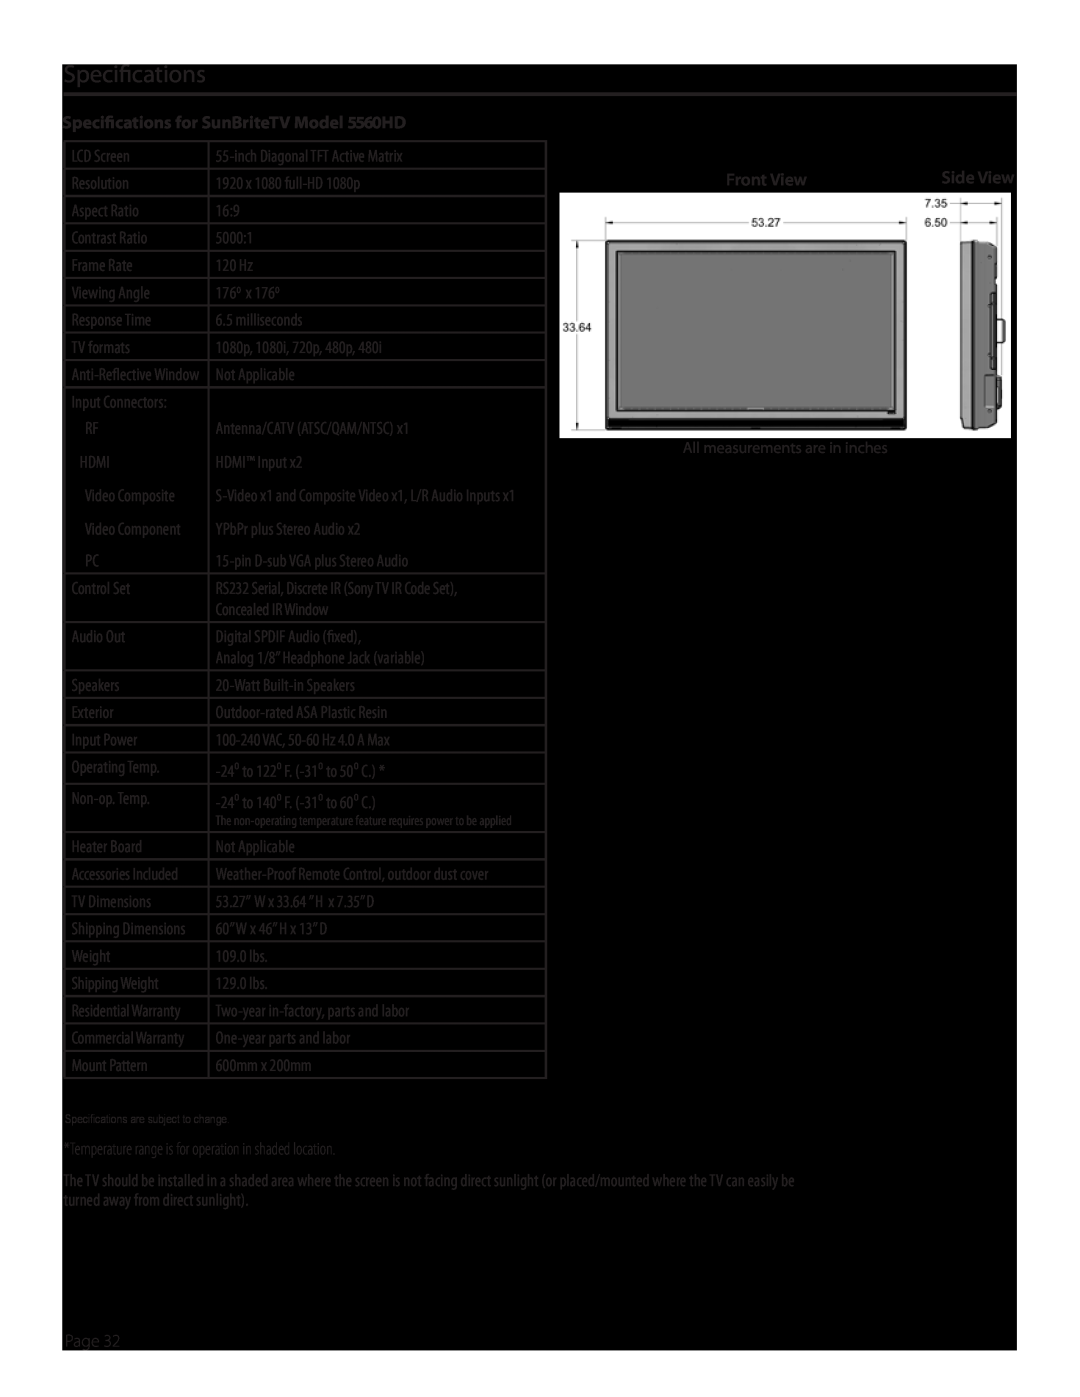 SunBriteTV SB-5560HD-BL, SB5560HDSL, SB5560HDBL, SB-5560HD-SL Specifications for SunBriteTV Model 5560HD, Front View 